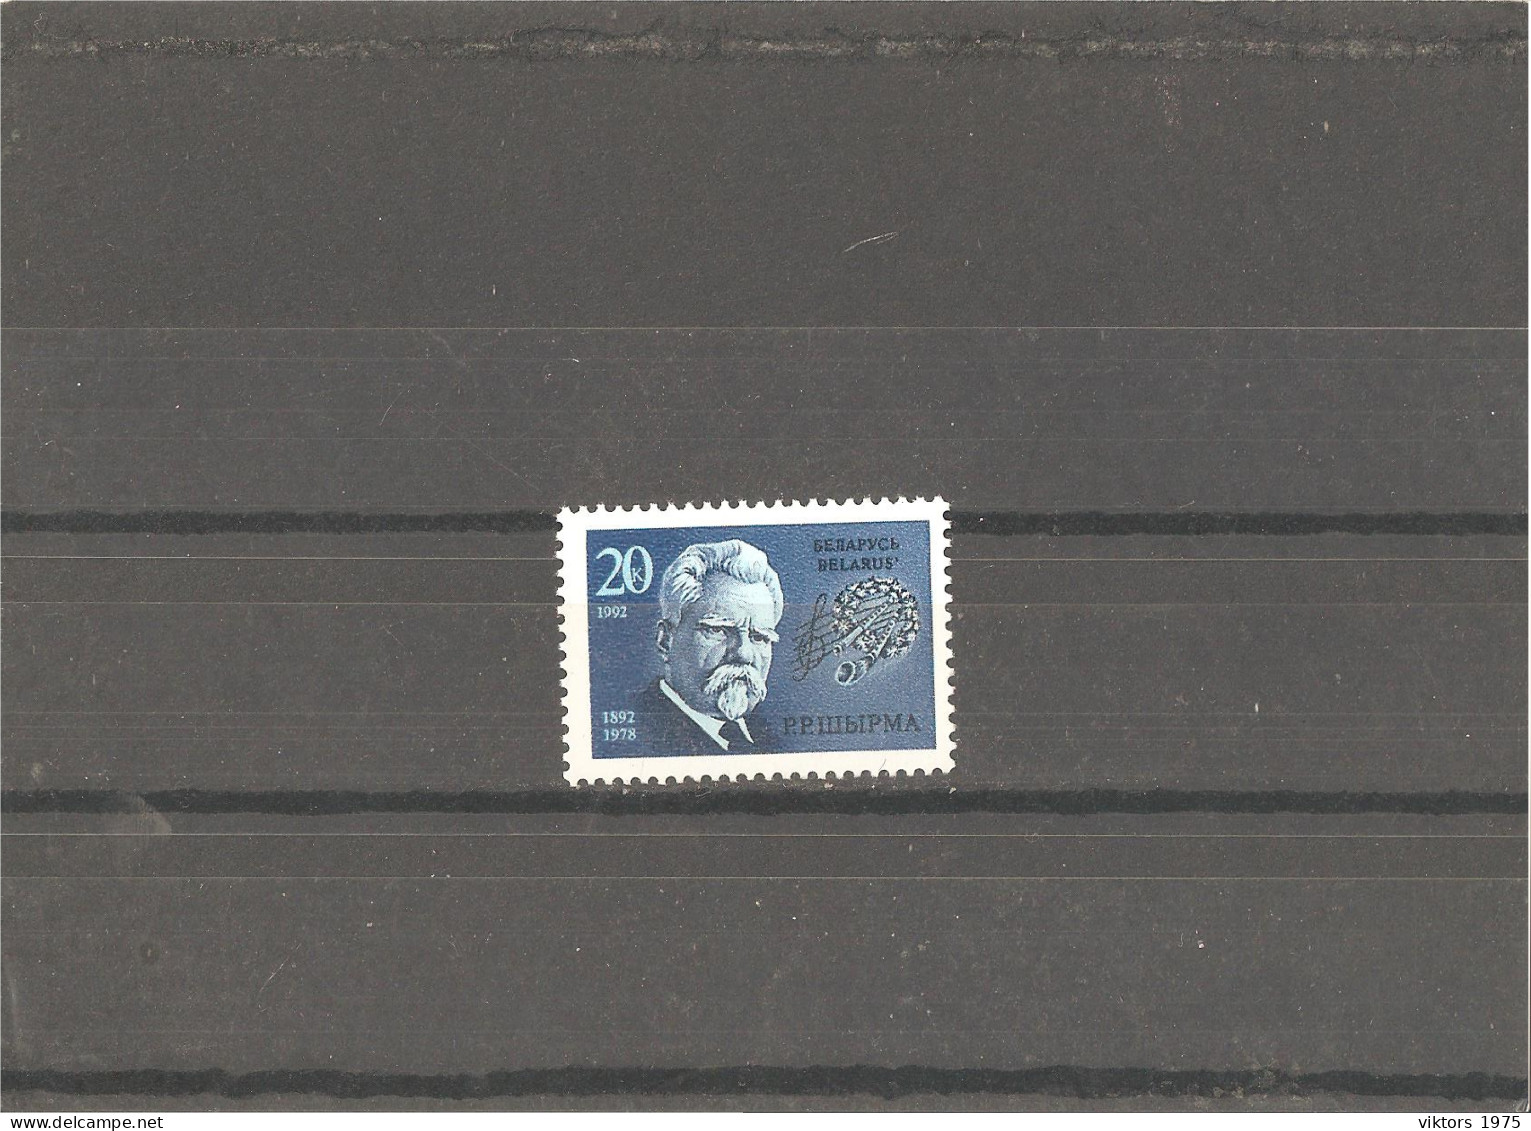 MNH Stamp Nr.2 In MICHEL Catalog - Belarus